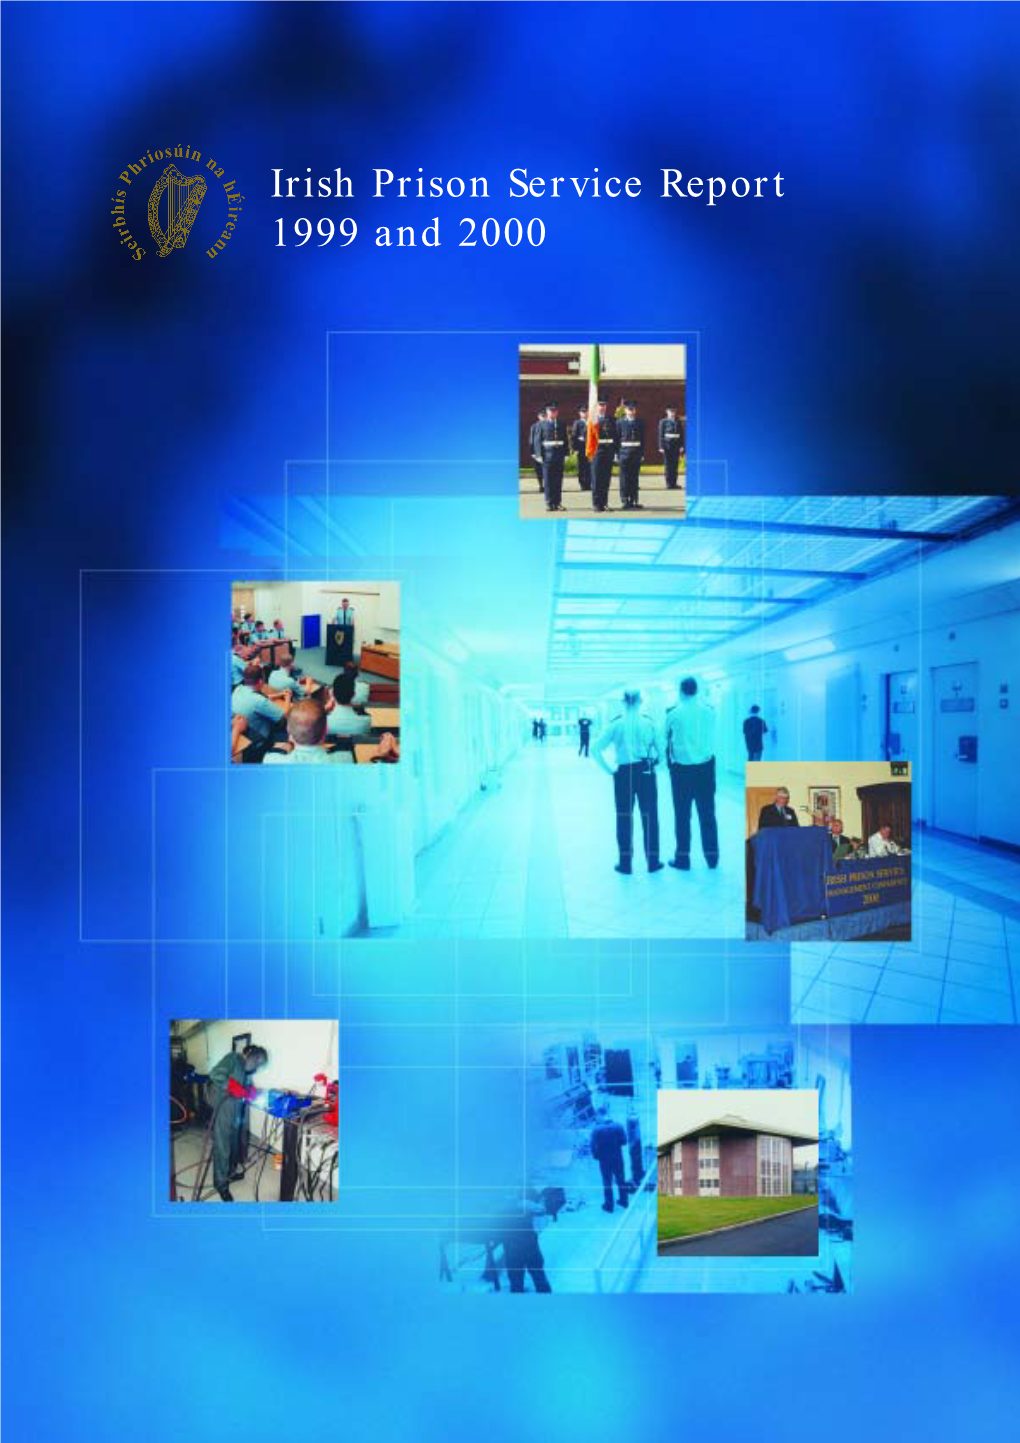 Irish Prison Service Annual Report 1999-2000